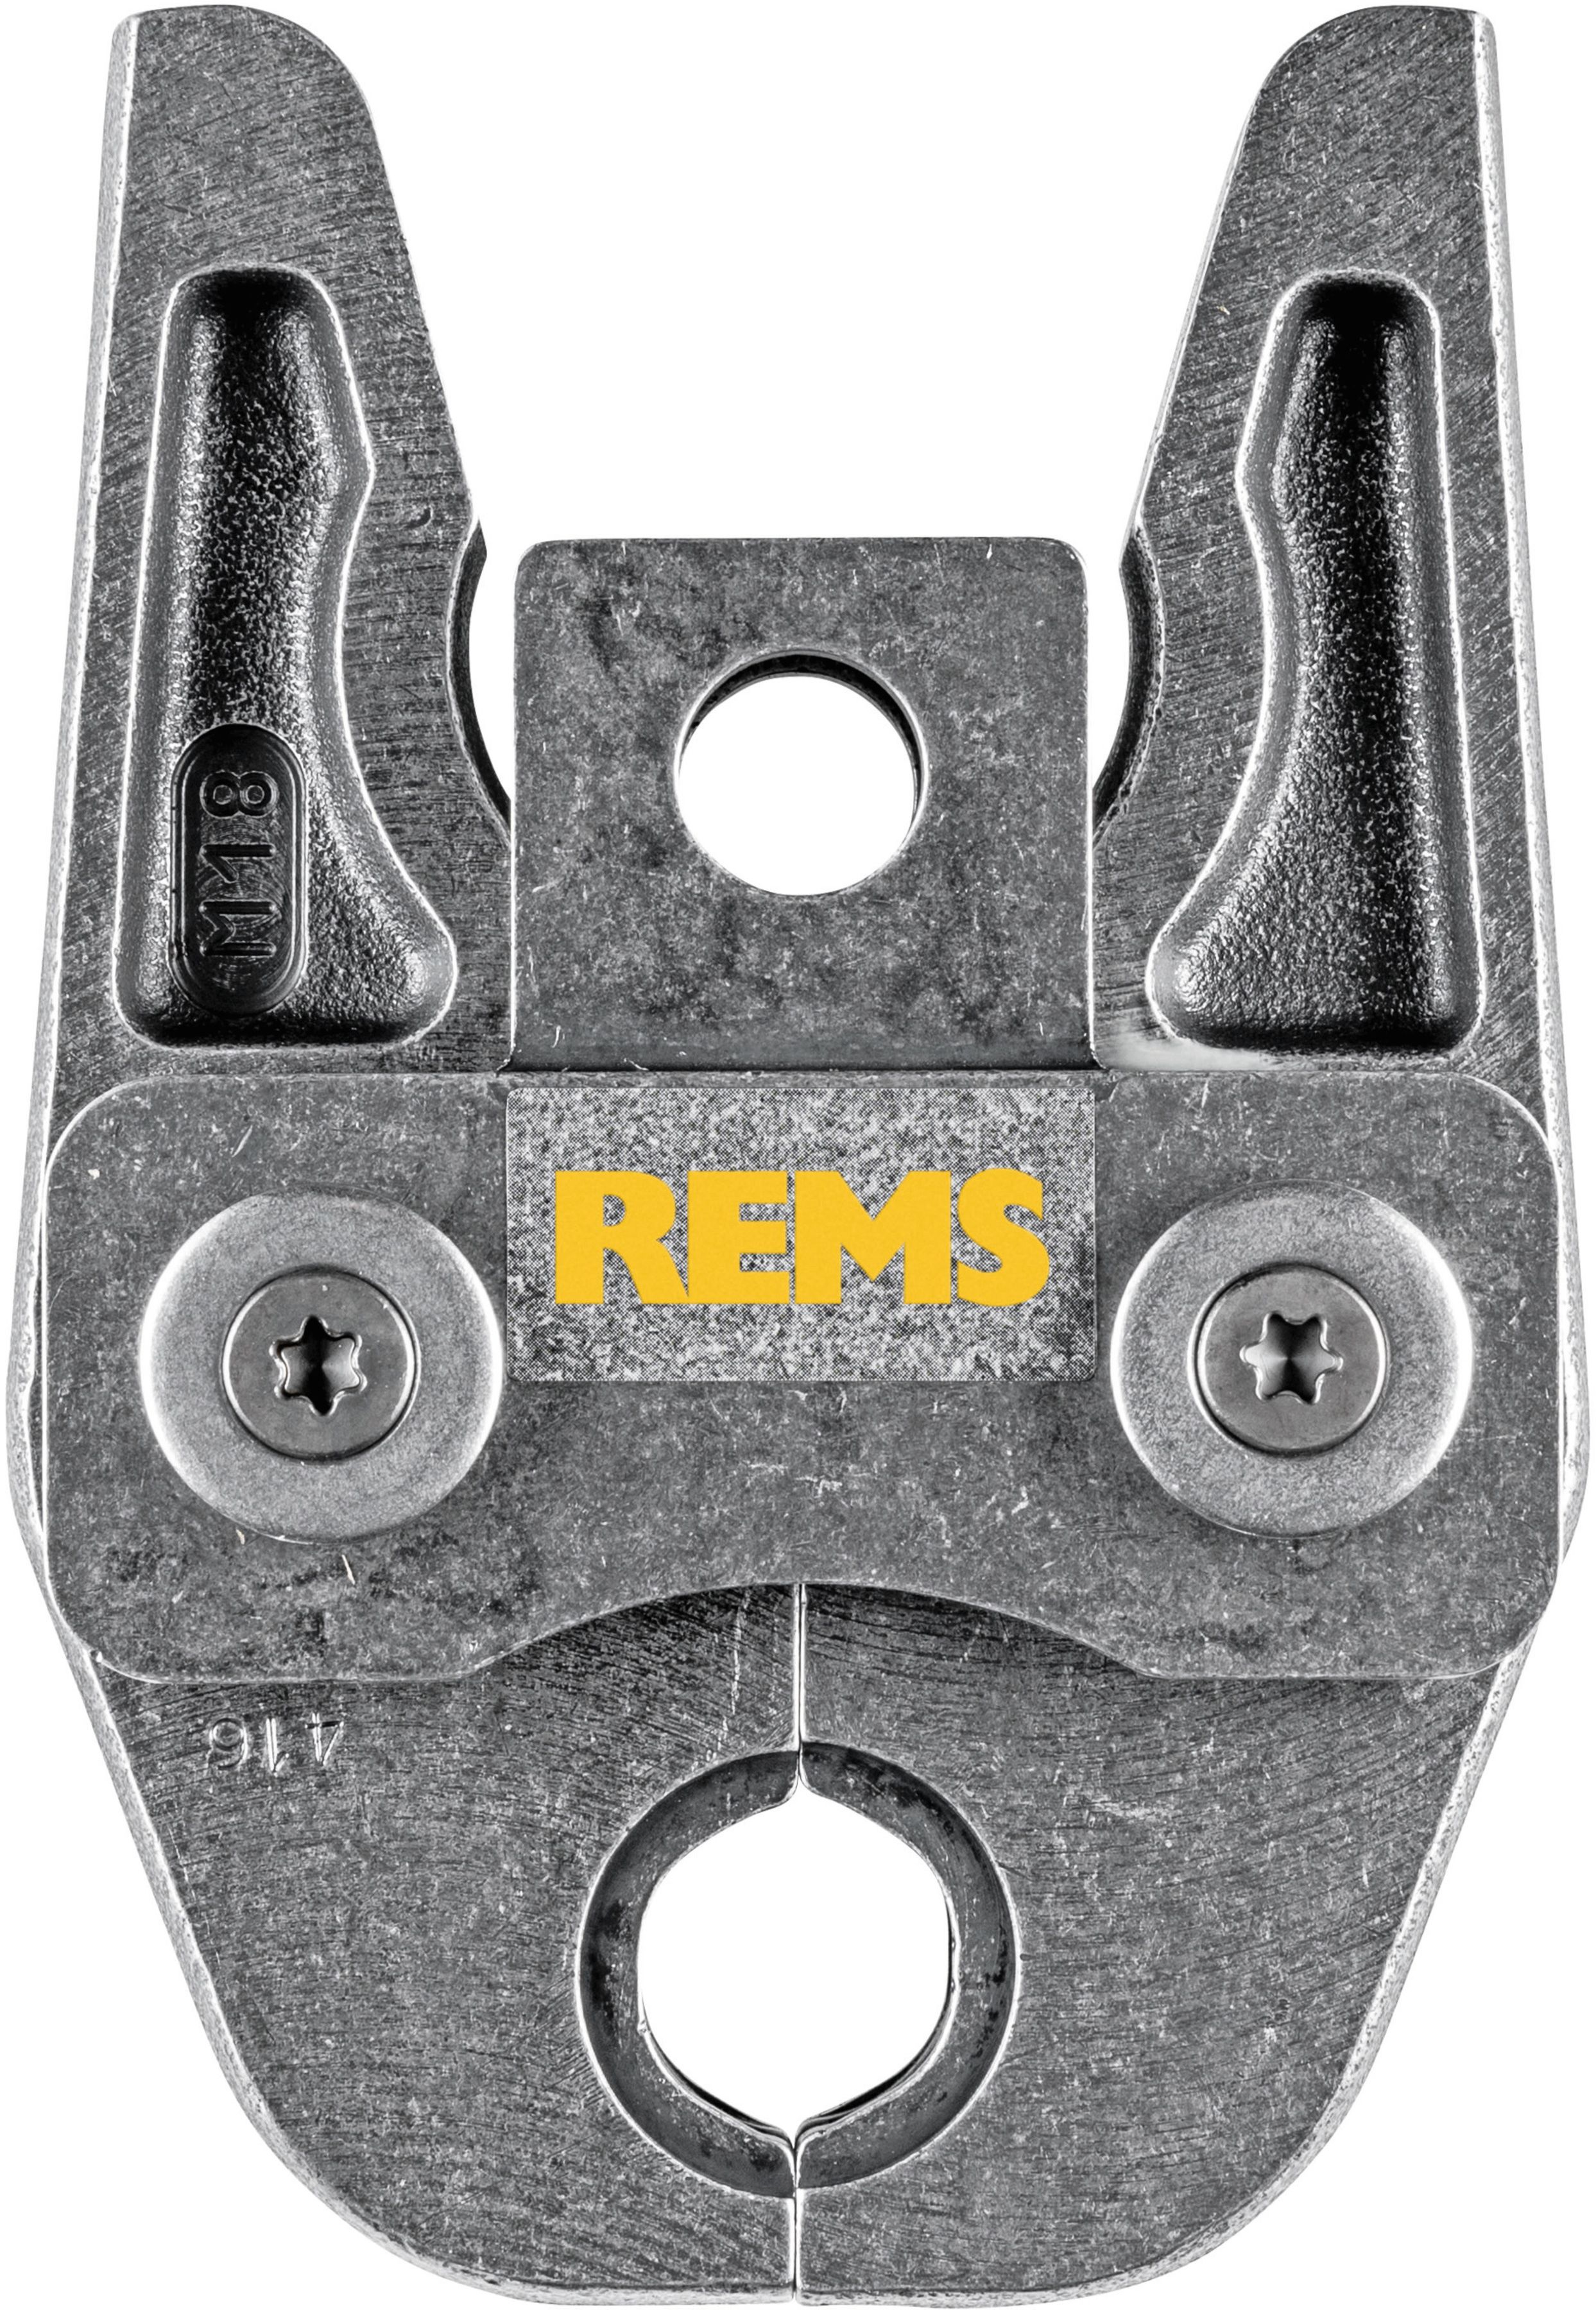 REMS Presszange 570110, M15 - Sanitärwerkzeuge